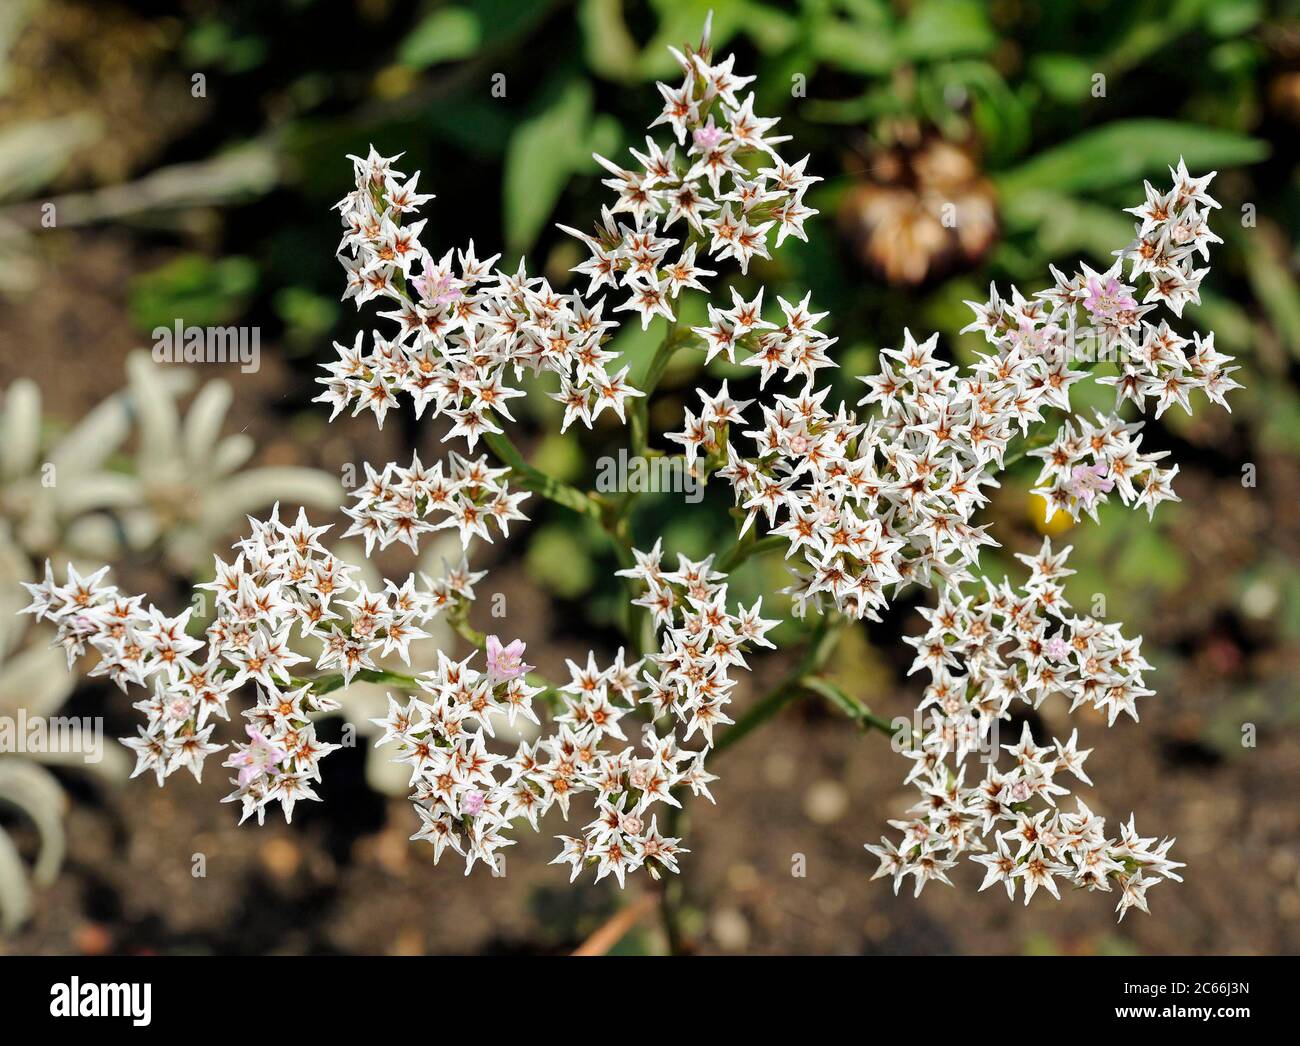 Blühende Dolden von Goniolimon tataricum im Sommer, mehrjährig aus den Steppen Südosteuropas, Russlands und Asiens, können sowohl als geschnittene als auch als getrocknete Blüten verwendet werden Stockfoto